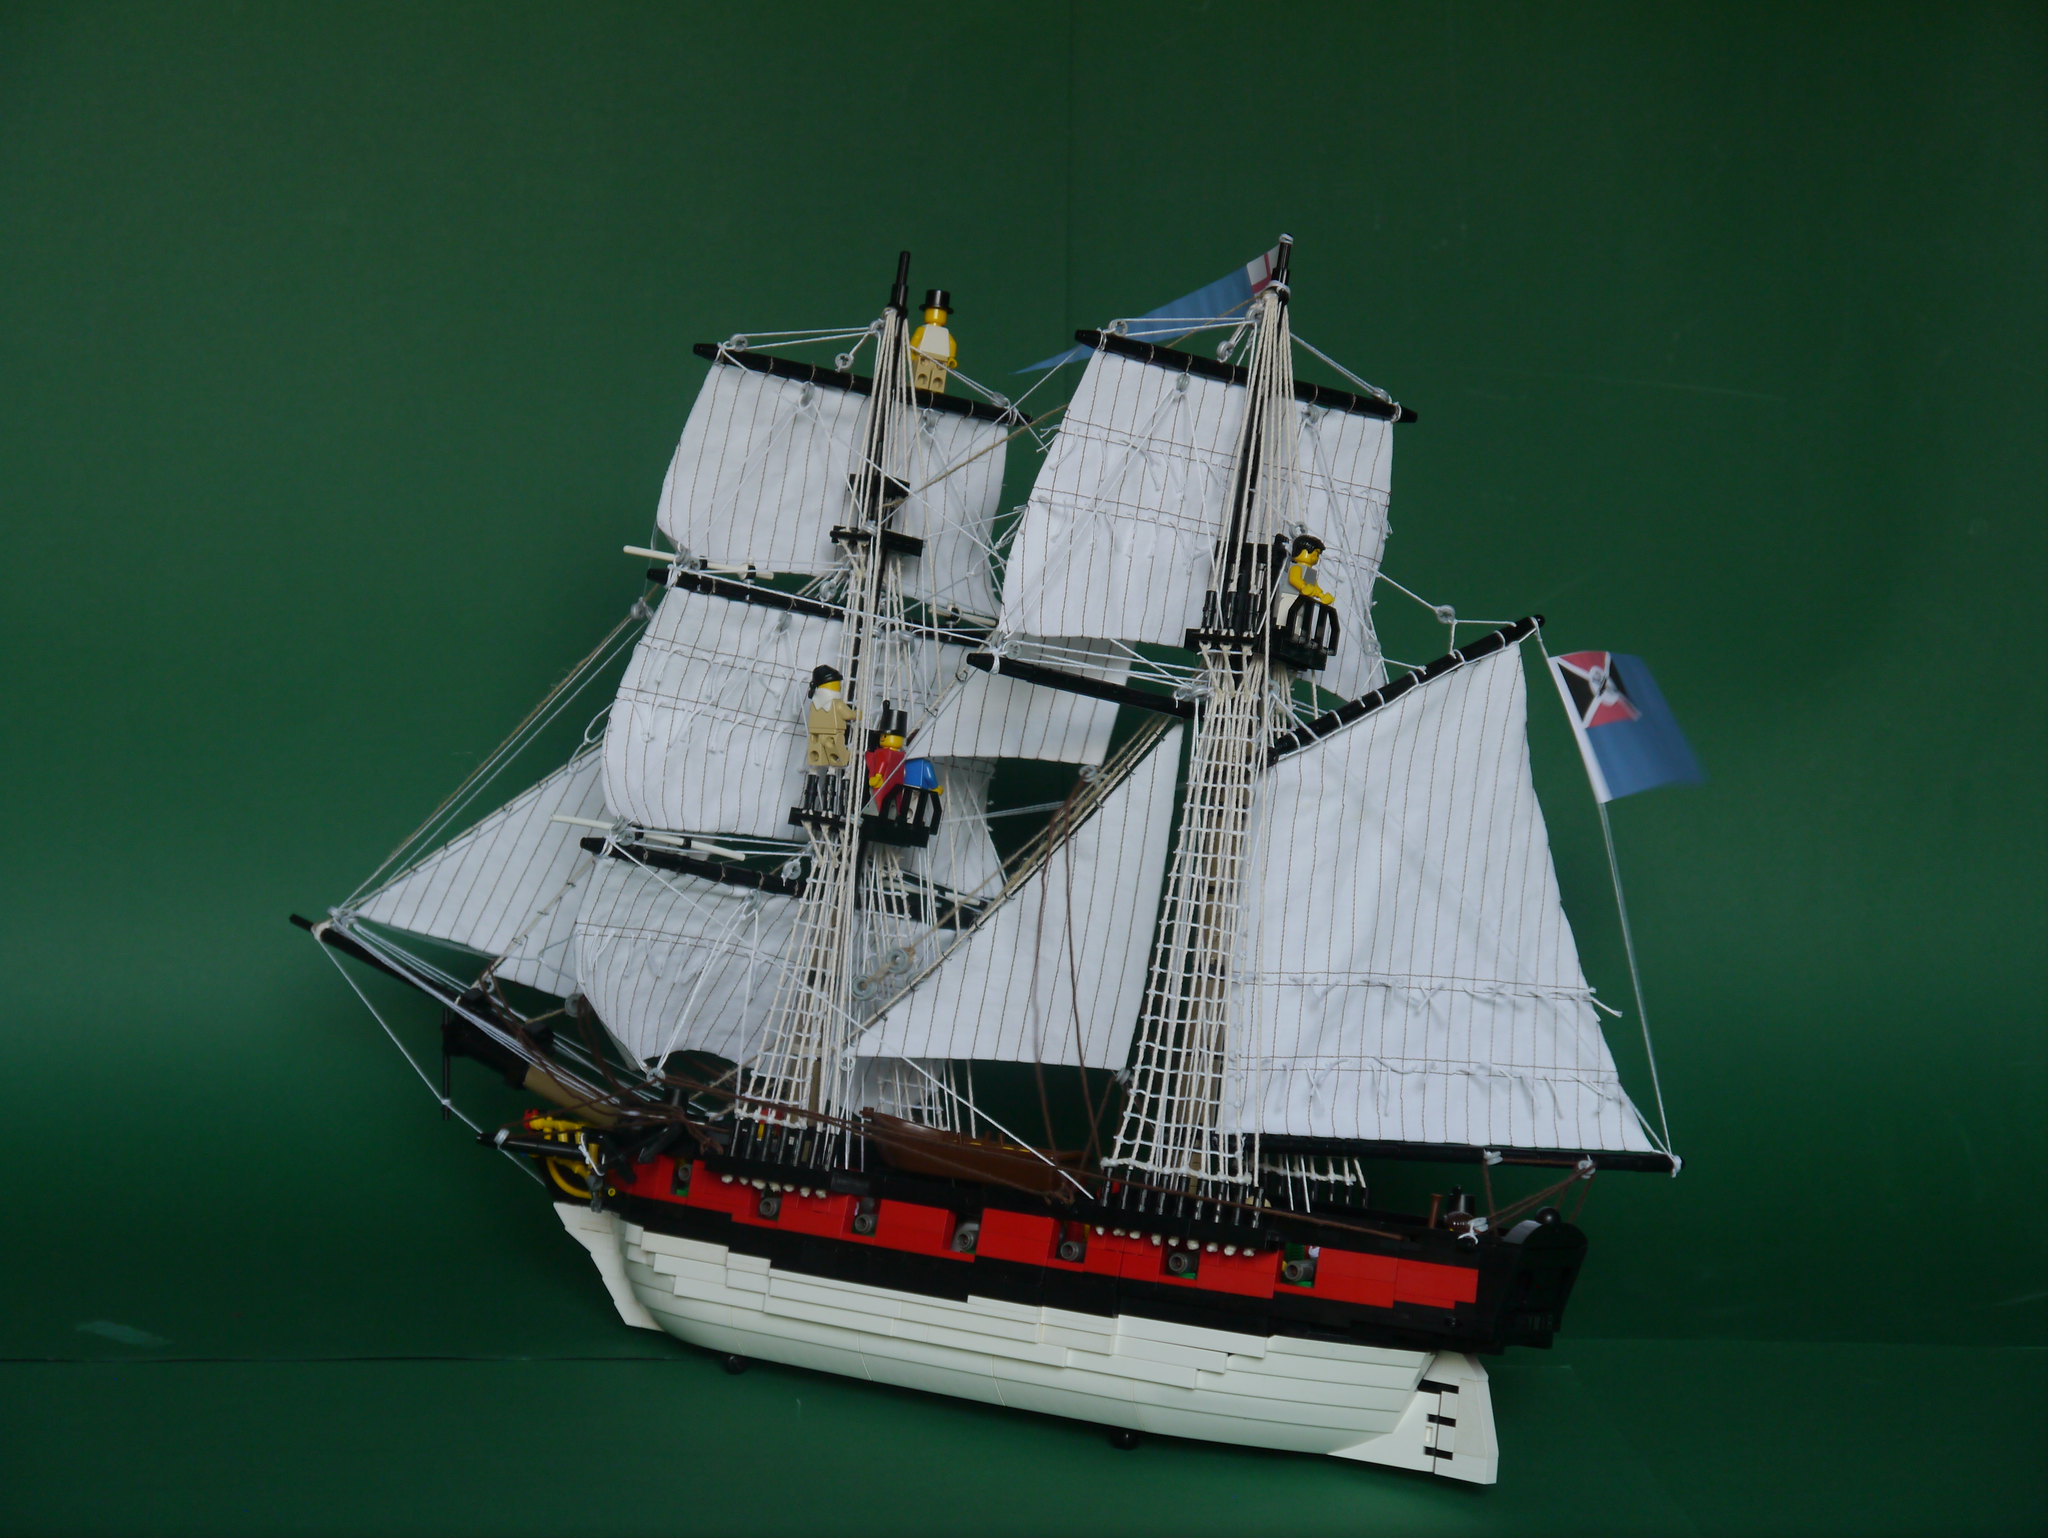 Photo of "HMS Ymir" by Wellesley